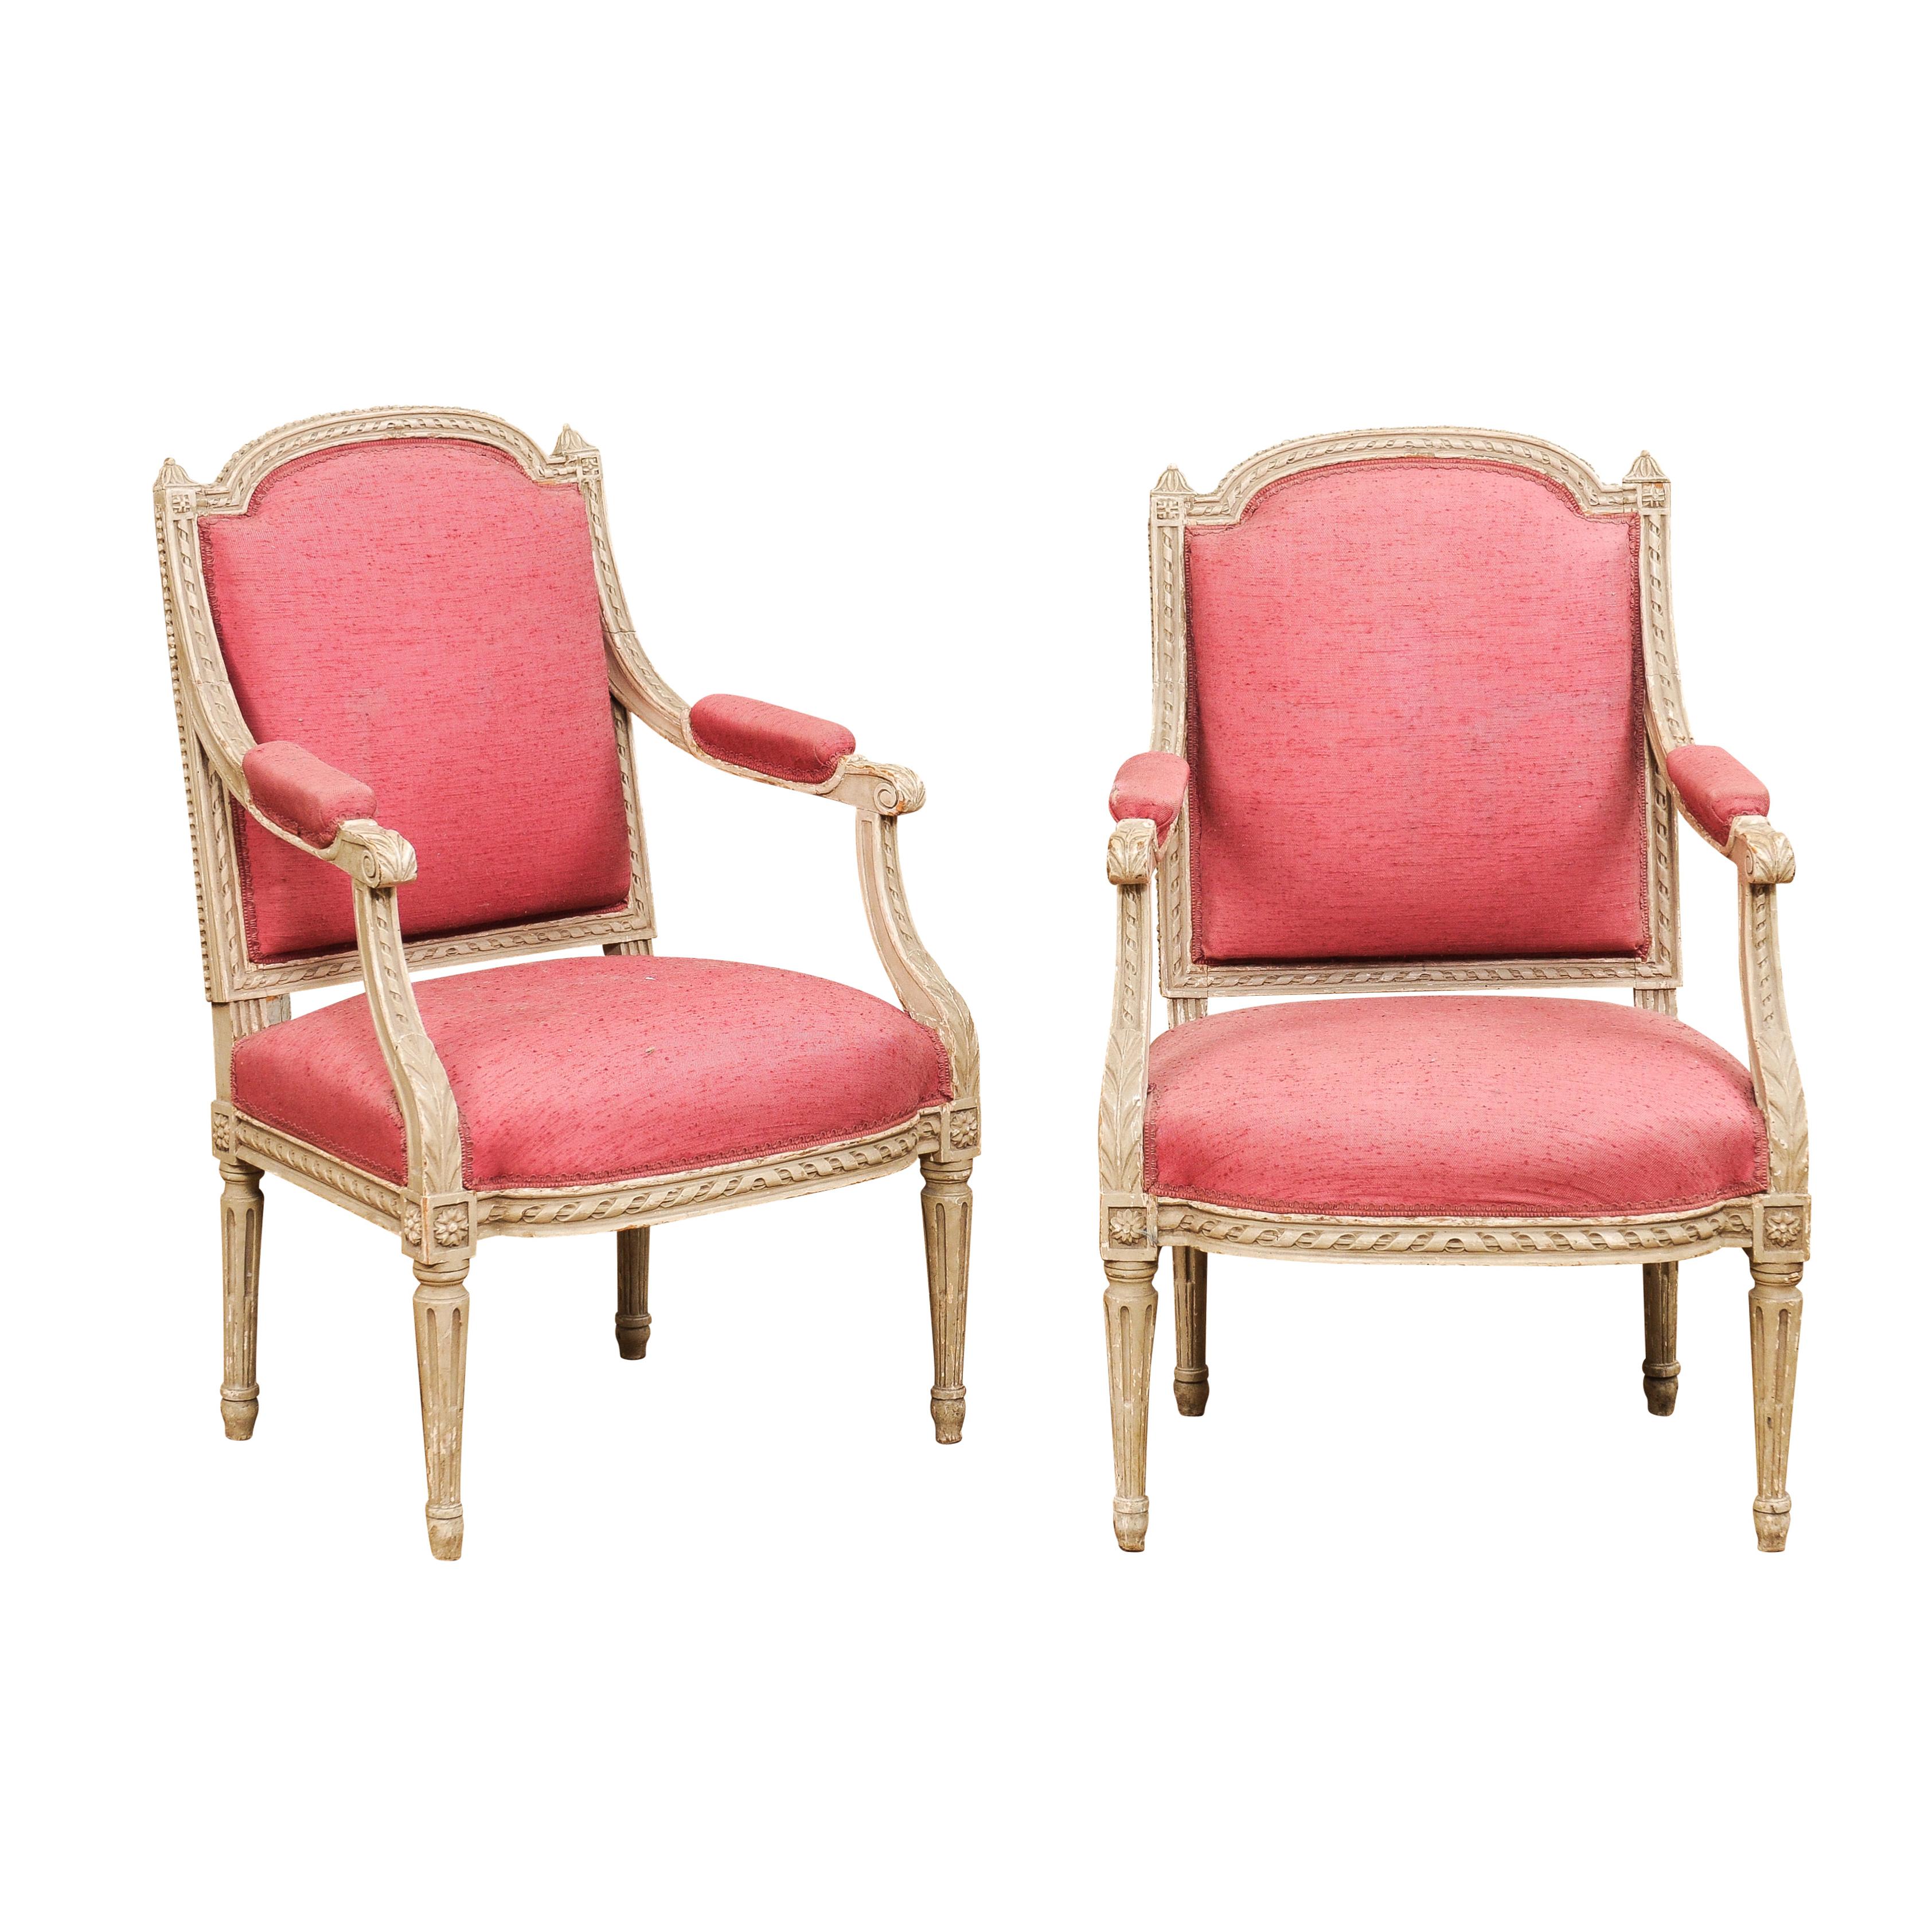 Zwei französische Sessel aus bemaltem Holz im Louis-XVI-Stil aus dem 19. Jahrhundert mit geschnitztem Dekor wie verschlungenen Seilmotiven, Akanthusblättern, Rosetten und kleinen Perlen. Verschönern Sie Ihren Wohnraum mit der zeitlosen Eleganz